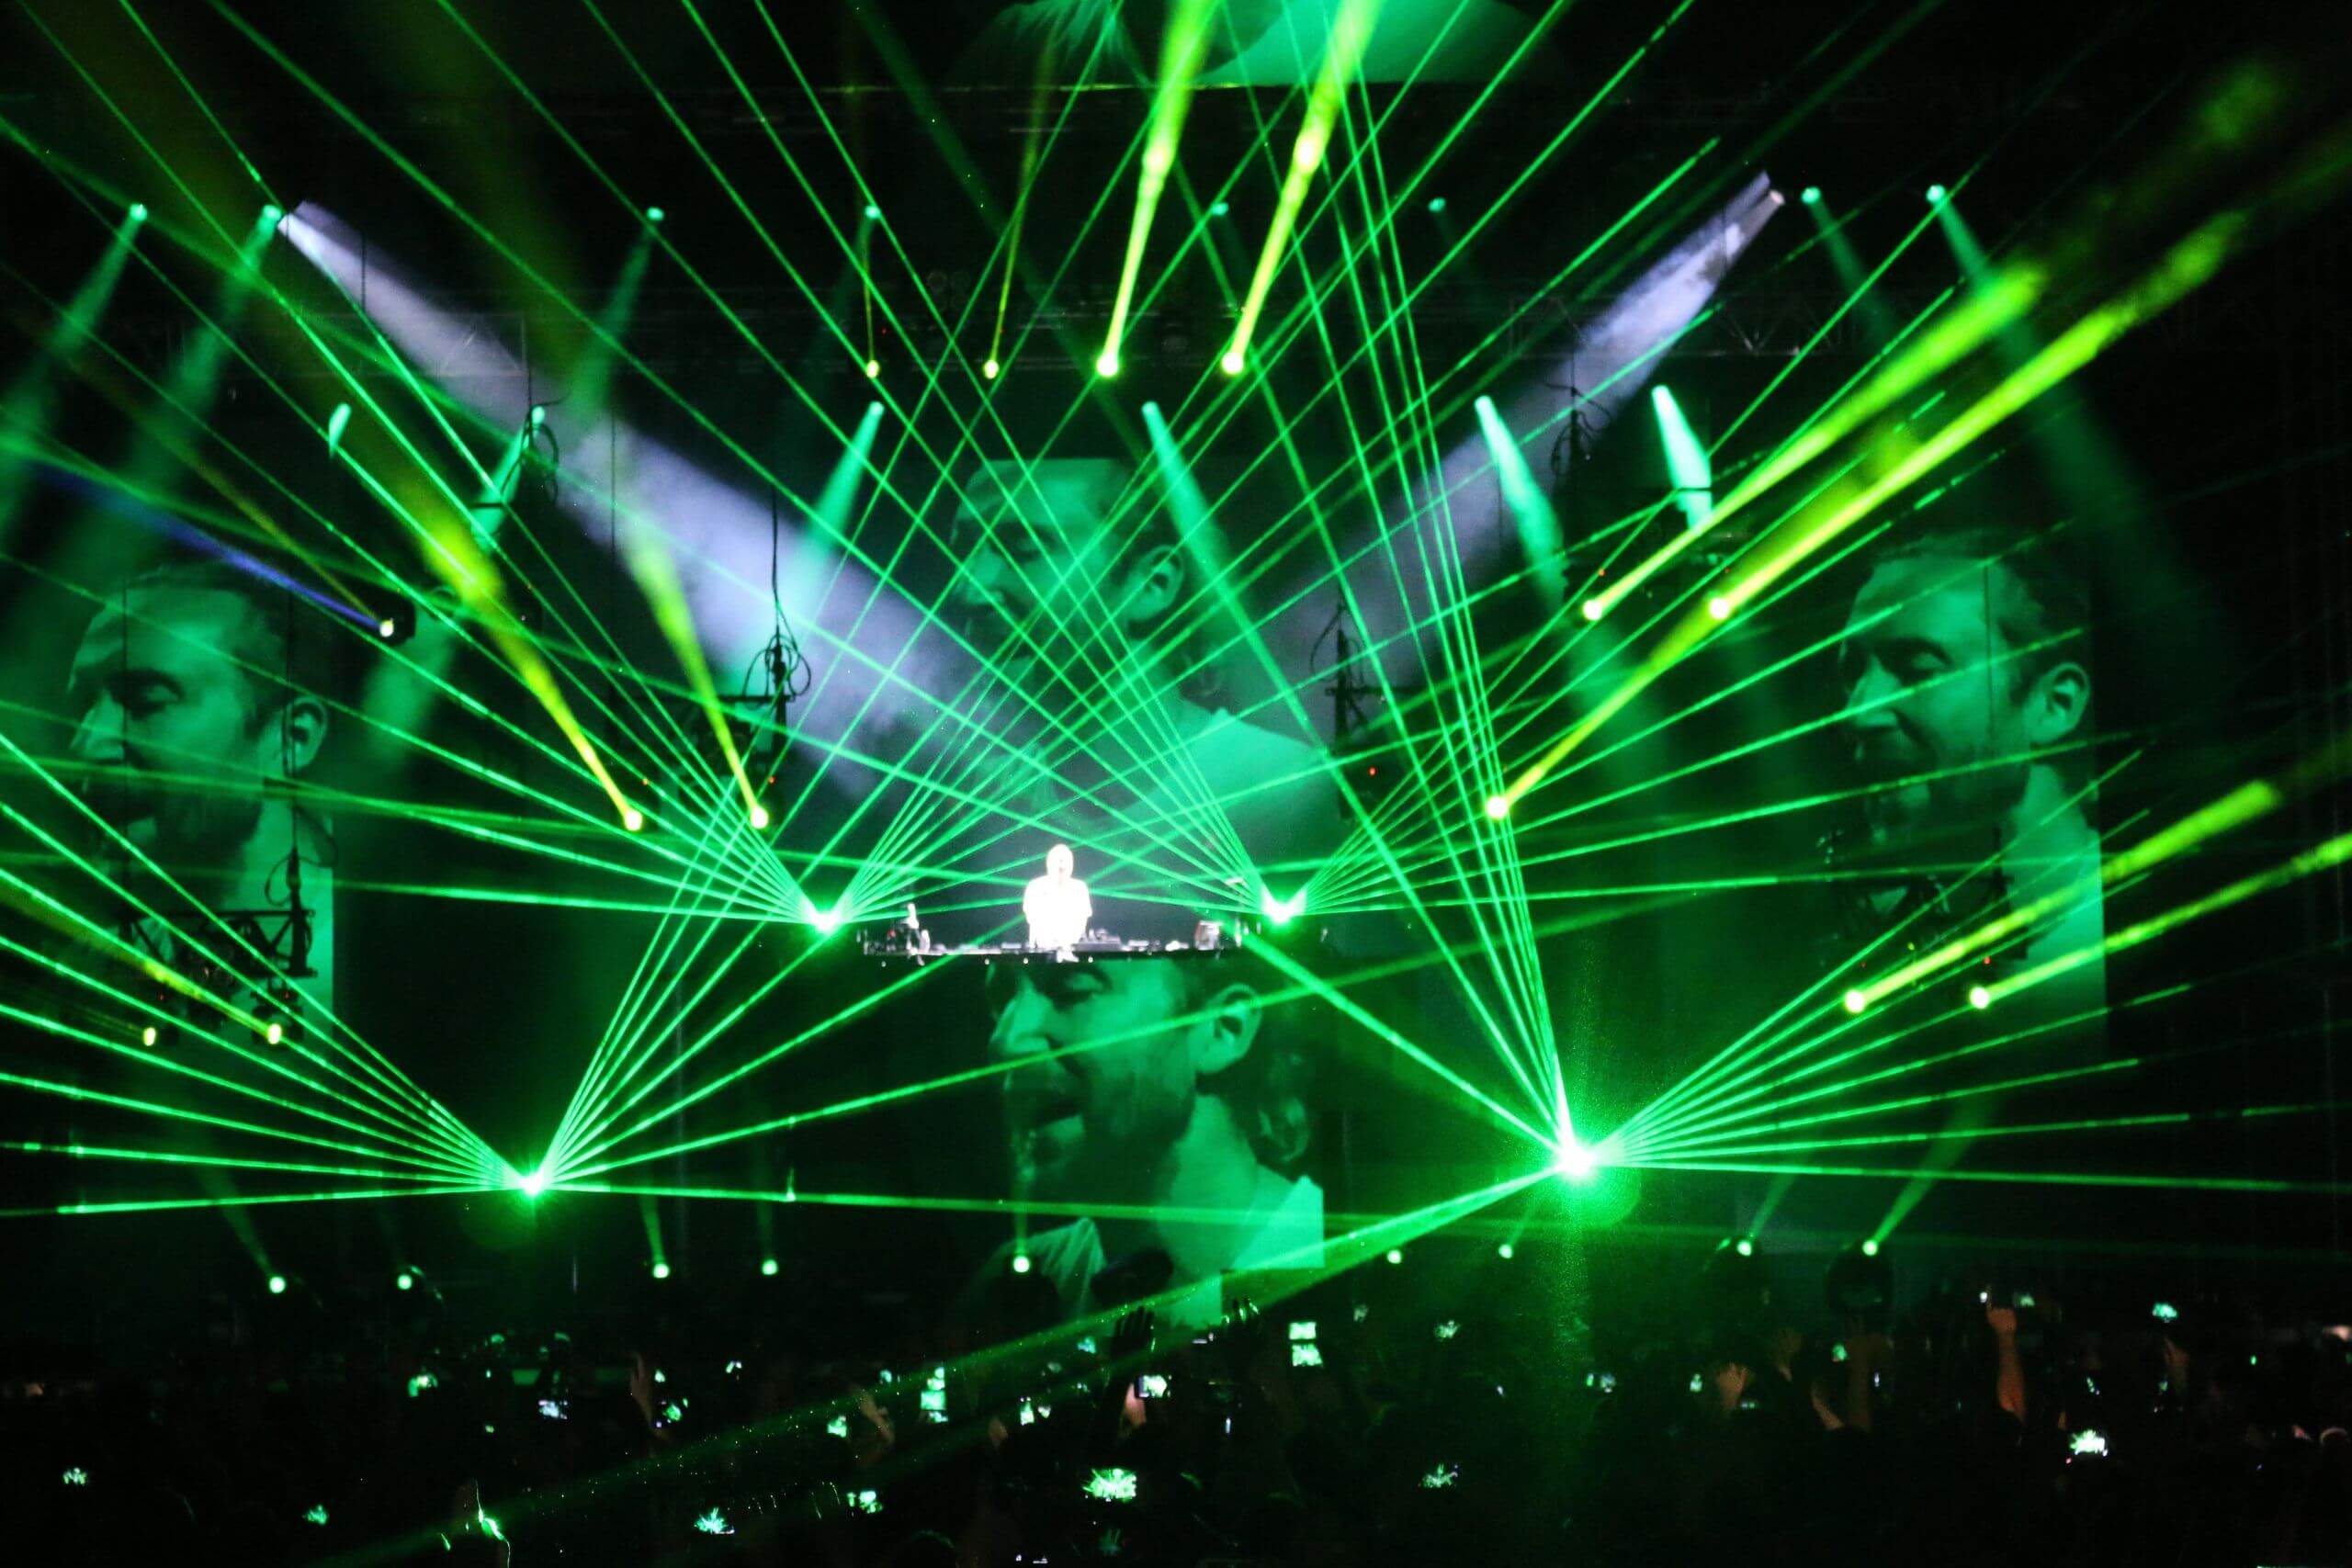 Europe Évènement - Show festival - Photo d'un concert du DJ David Guetta avec faisceaux lasers verts autour de lui